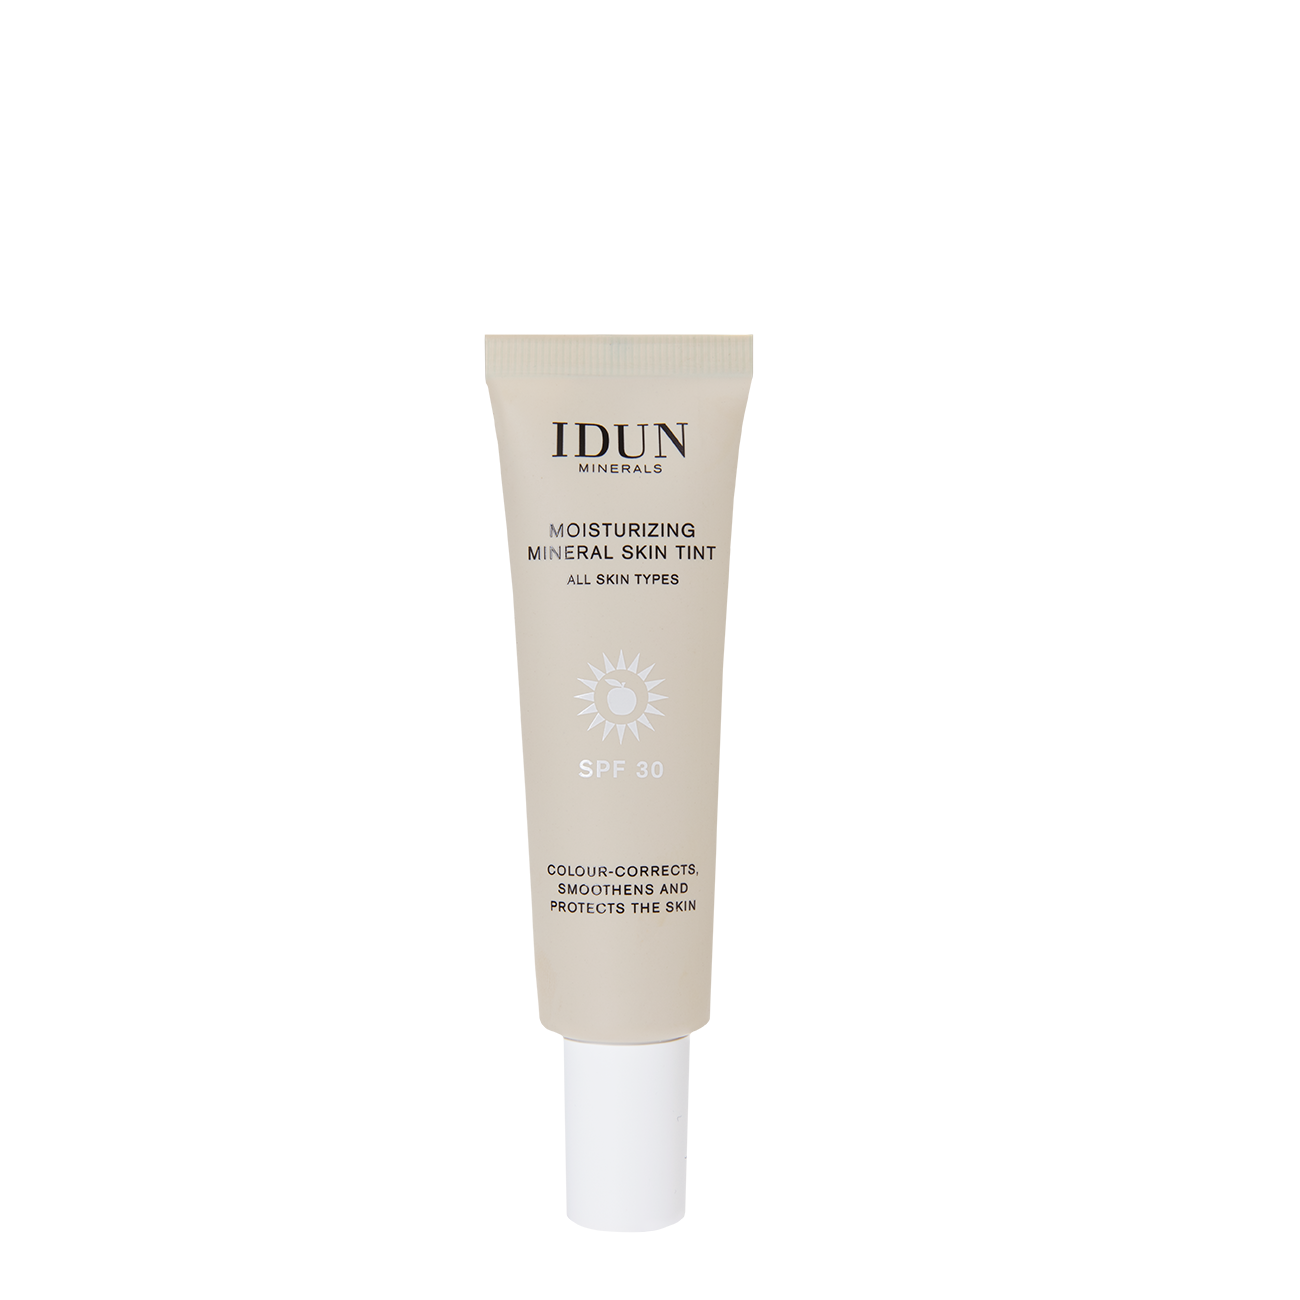 IDUN Minerals Moisturizing Mineral Skin Tint SPF30 Långholmen Light/Medium Neutral 27 ml